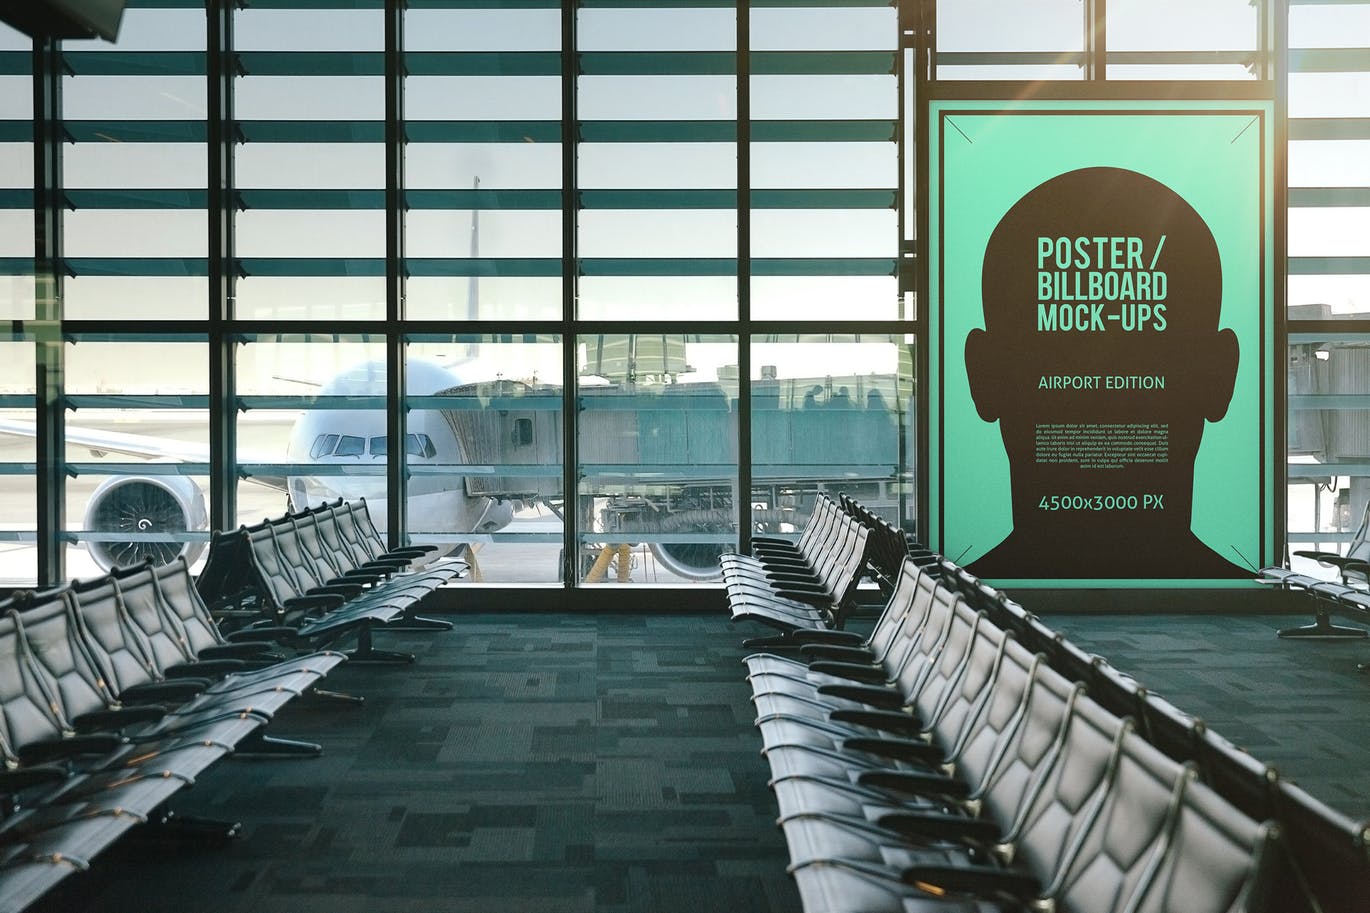 机场候机室海报/广告牌样机蚂蚁素材精选模板#1 Poster / Billboard Mock-ups – Airport Edition #1插图